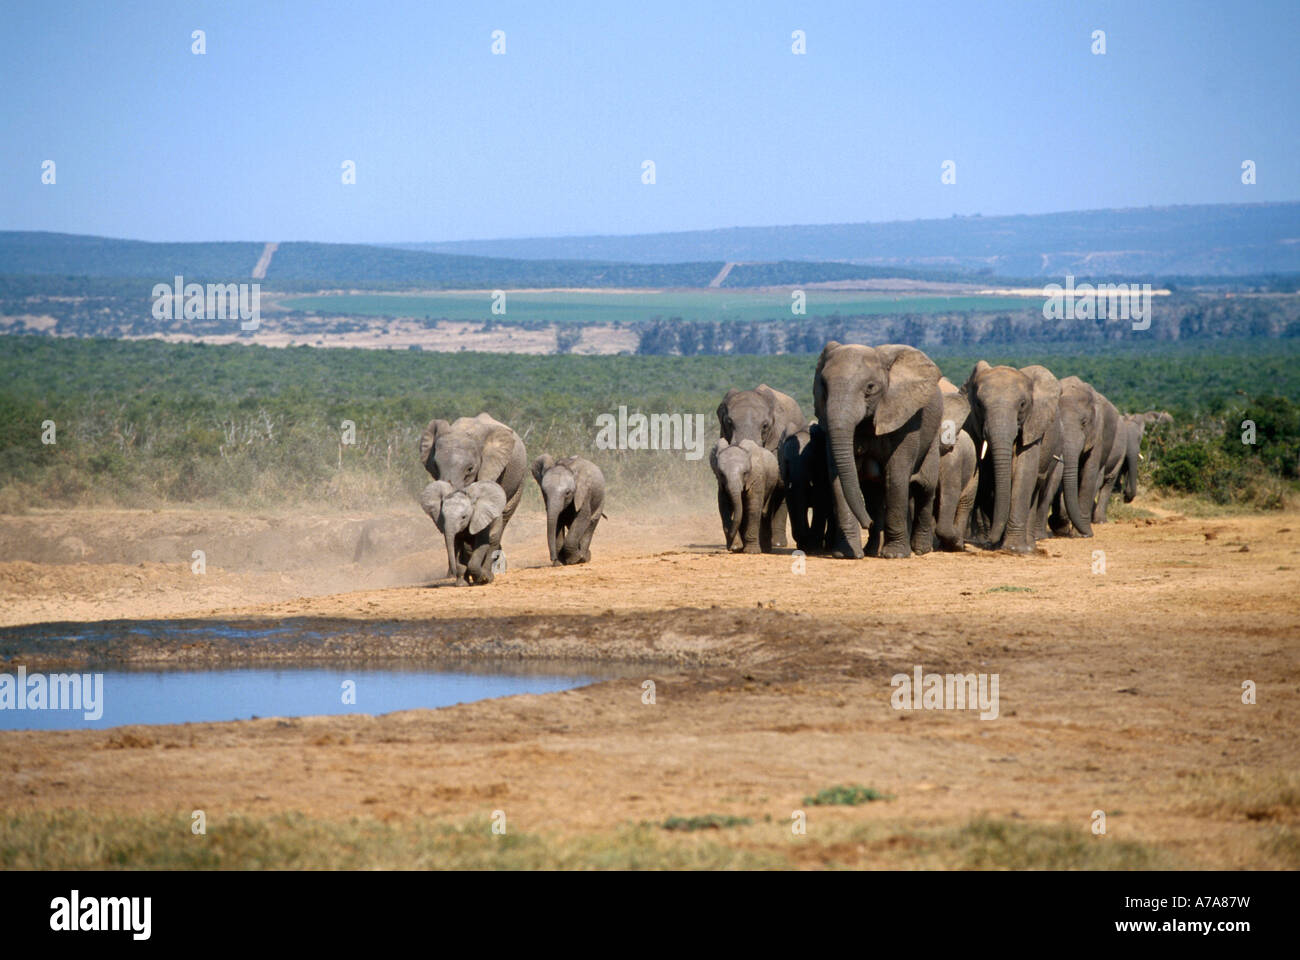 Eine Zucht Herde Elefanten nähert sich einem kleinen Wasserloch vor dem Hintergrund der landwirtschaftlichen Flächen im fernen Hintergrund Stockfoto